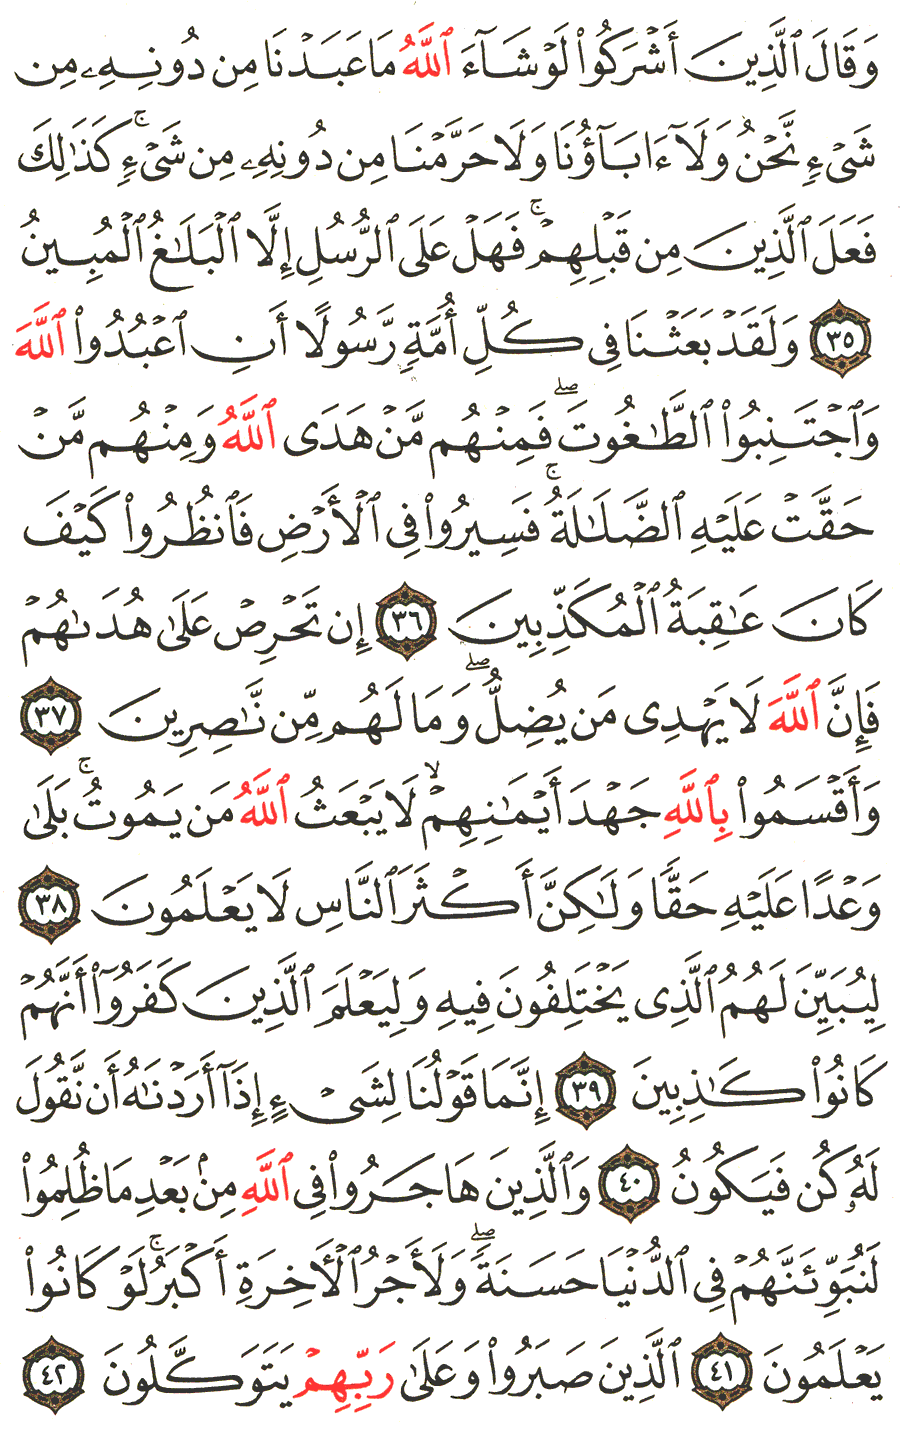 الصفحة رقم 271  من القرآن الكريم مكتوبة من المصحف